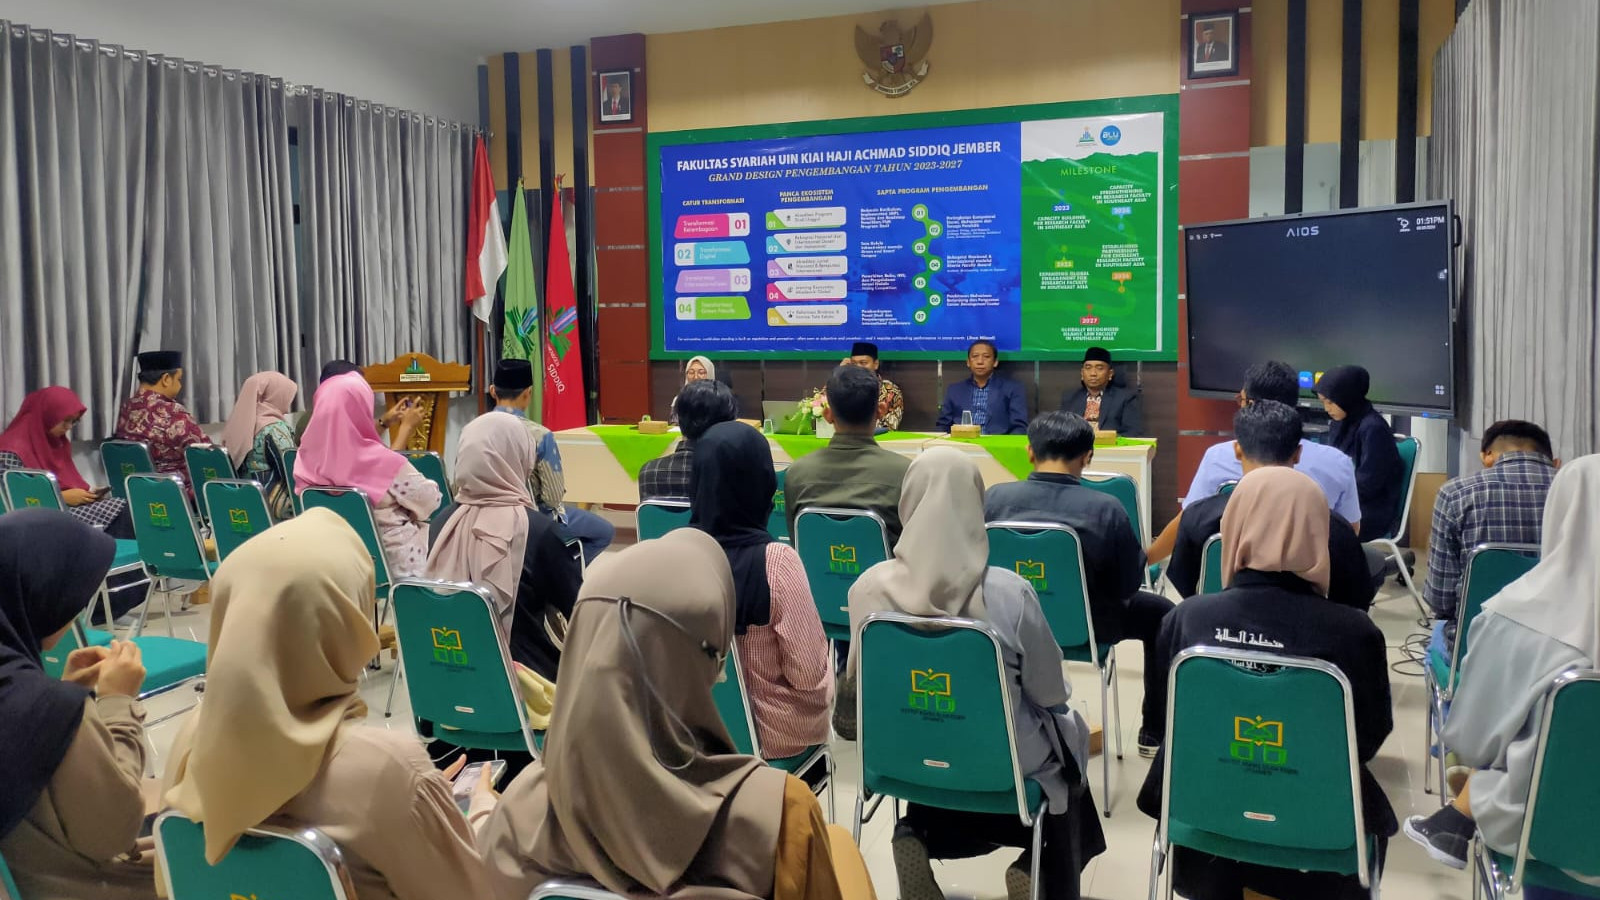 Fakultas Syariah UIN Jember Rilis Overseas Student Mobility Program, Berangkatkan Mahasiswa ke Tiga Negara